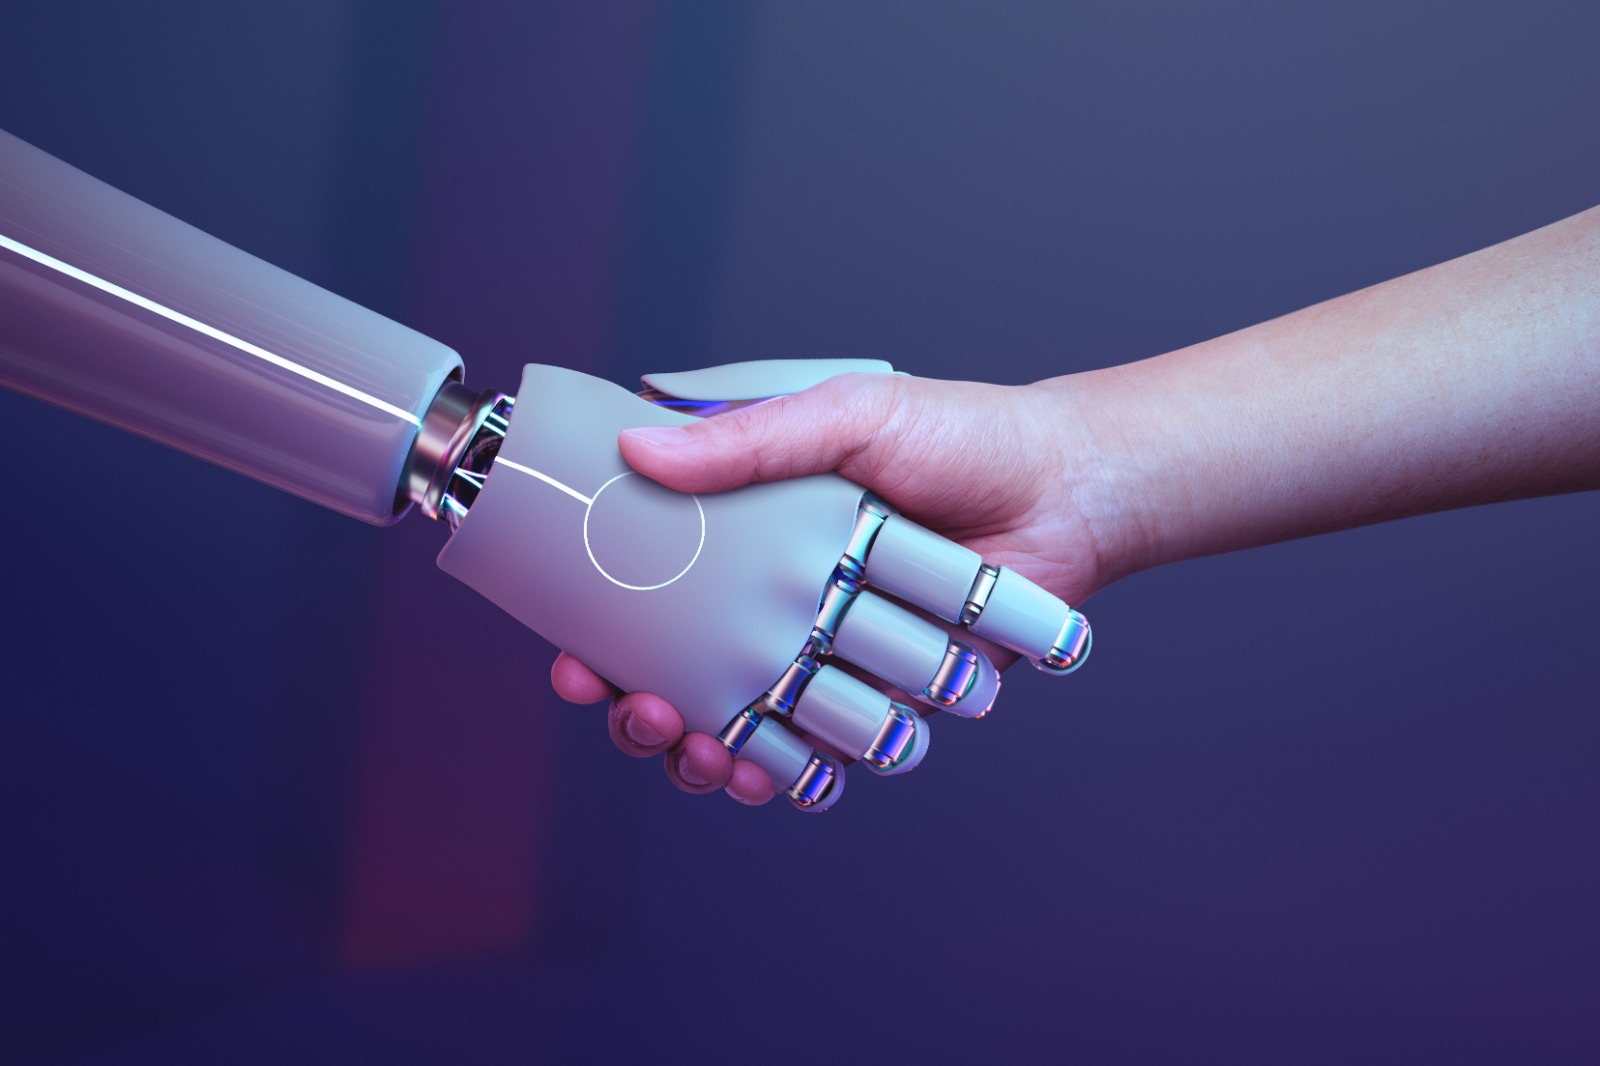 Belajar dari Kemampuan AI, Merebut Kembali Dominasi Manusia